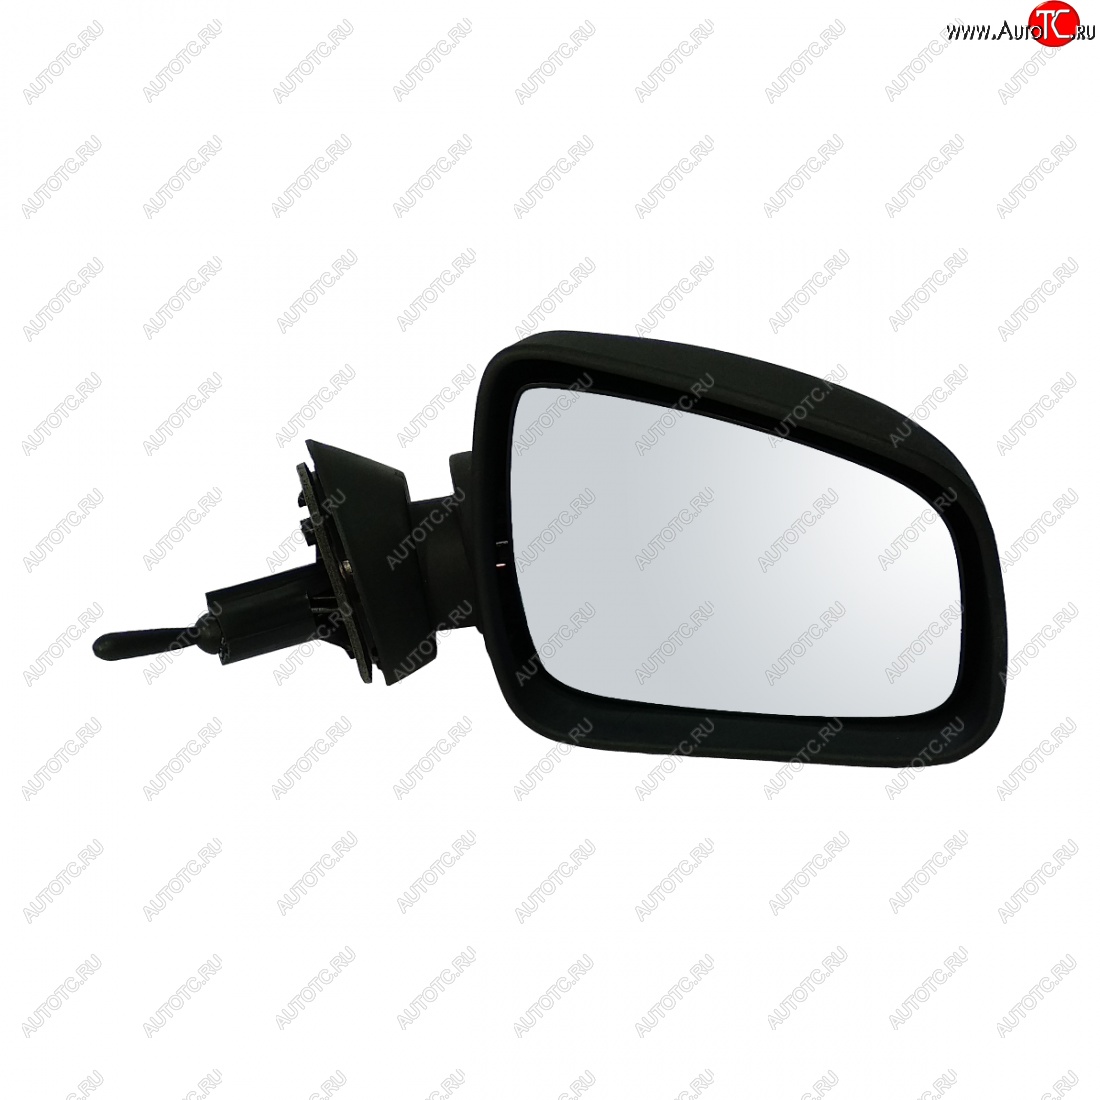 1 059 р. Правое зеркало заднего вида (мех. привод) Автоблик 2 Renault Sandero (BS) (2009-2014) (без антибликового покрытия, неокрашенное)